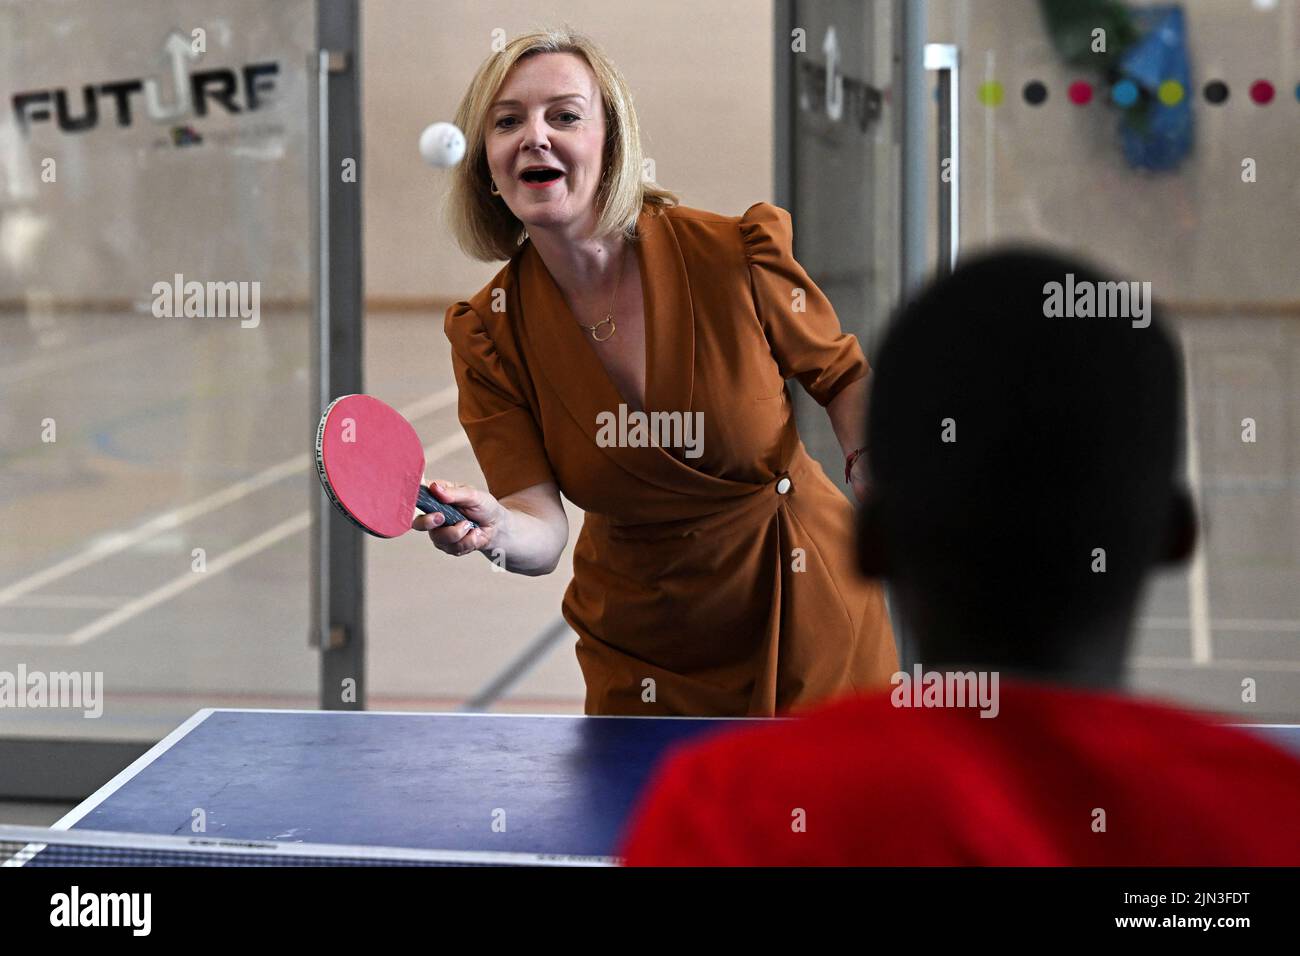 Il candidato alla leadership del partito conservatore britannico Liz Truss gioca a ping pong durante una visita alla Future Youth zone di Londra, in Gran Bretagna, il 8 agosto 2022. REUTERS/Dylan Martinez/Pool Foto Stock